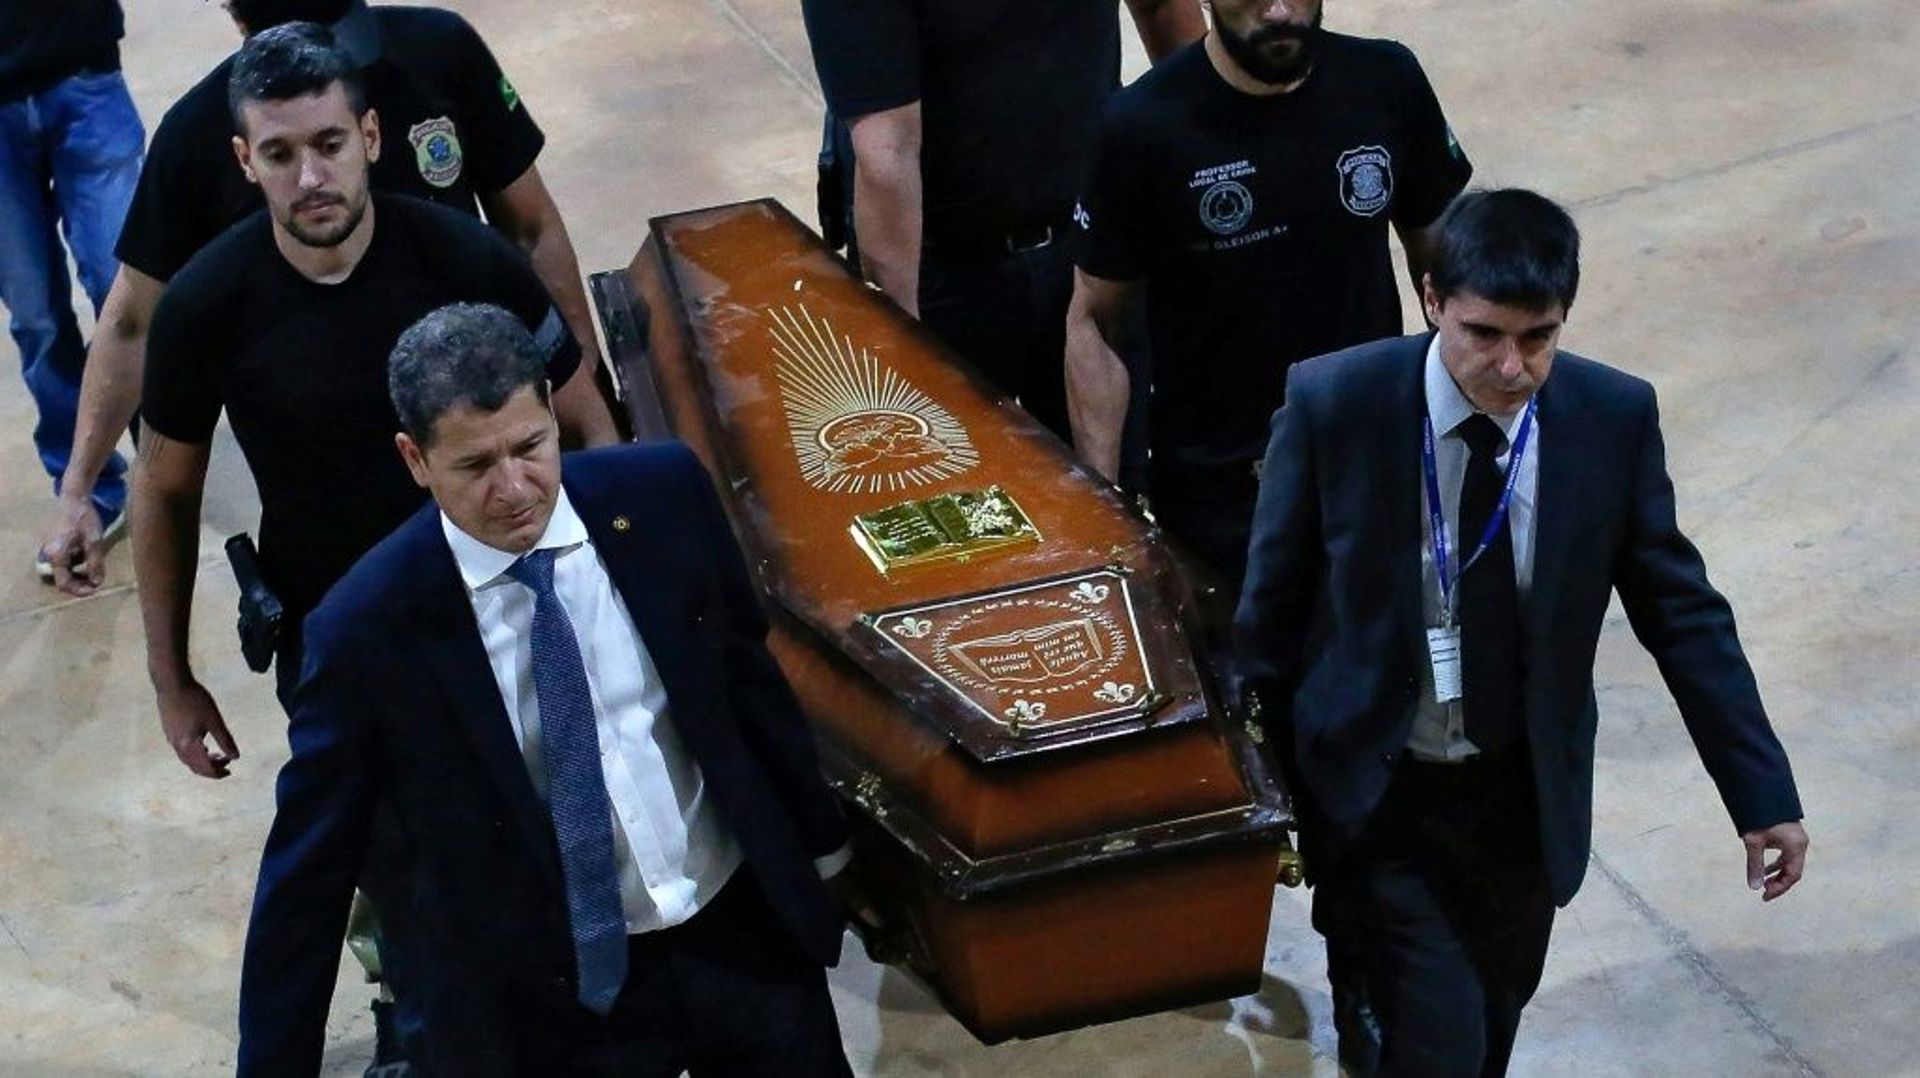 Des membres de la police fédérale portent l’un des cercueils contenant les restes humains du journaliste britannique Dom Phillips et de l’expert brésilien Bruno Pereira, le 16 juin 2022 à Brasilia